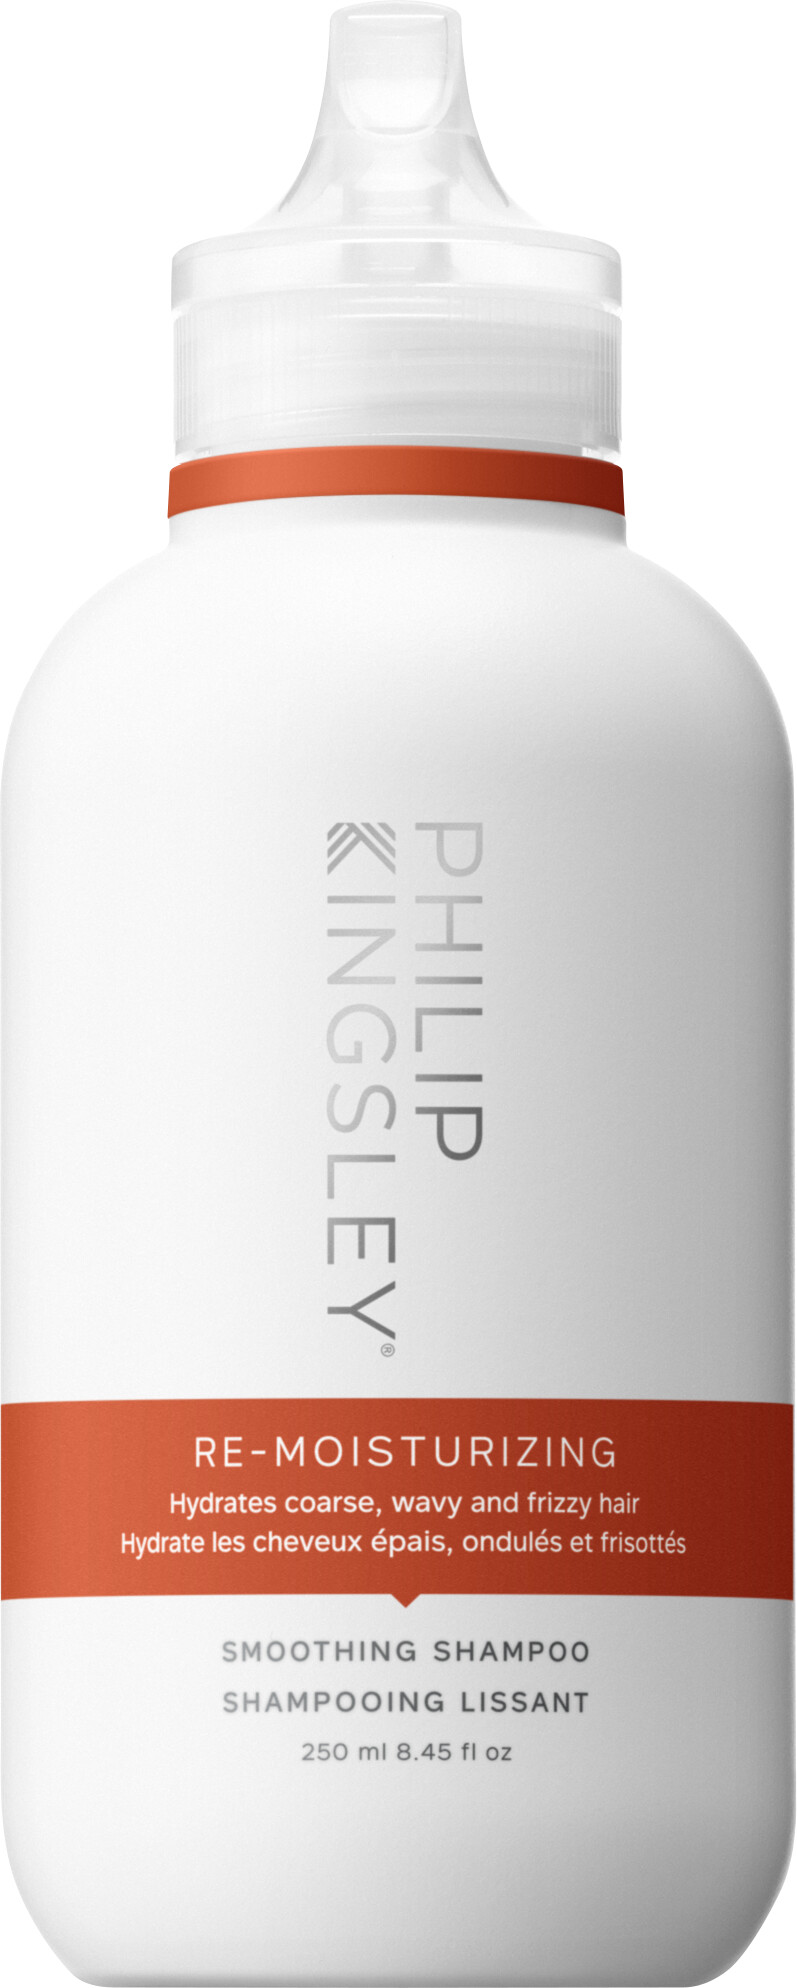 Philip Kingsley Re-Moisturizing Smoothing Shampoo 250ml